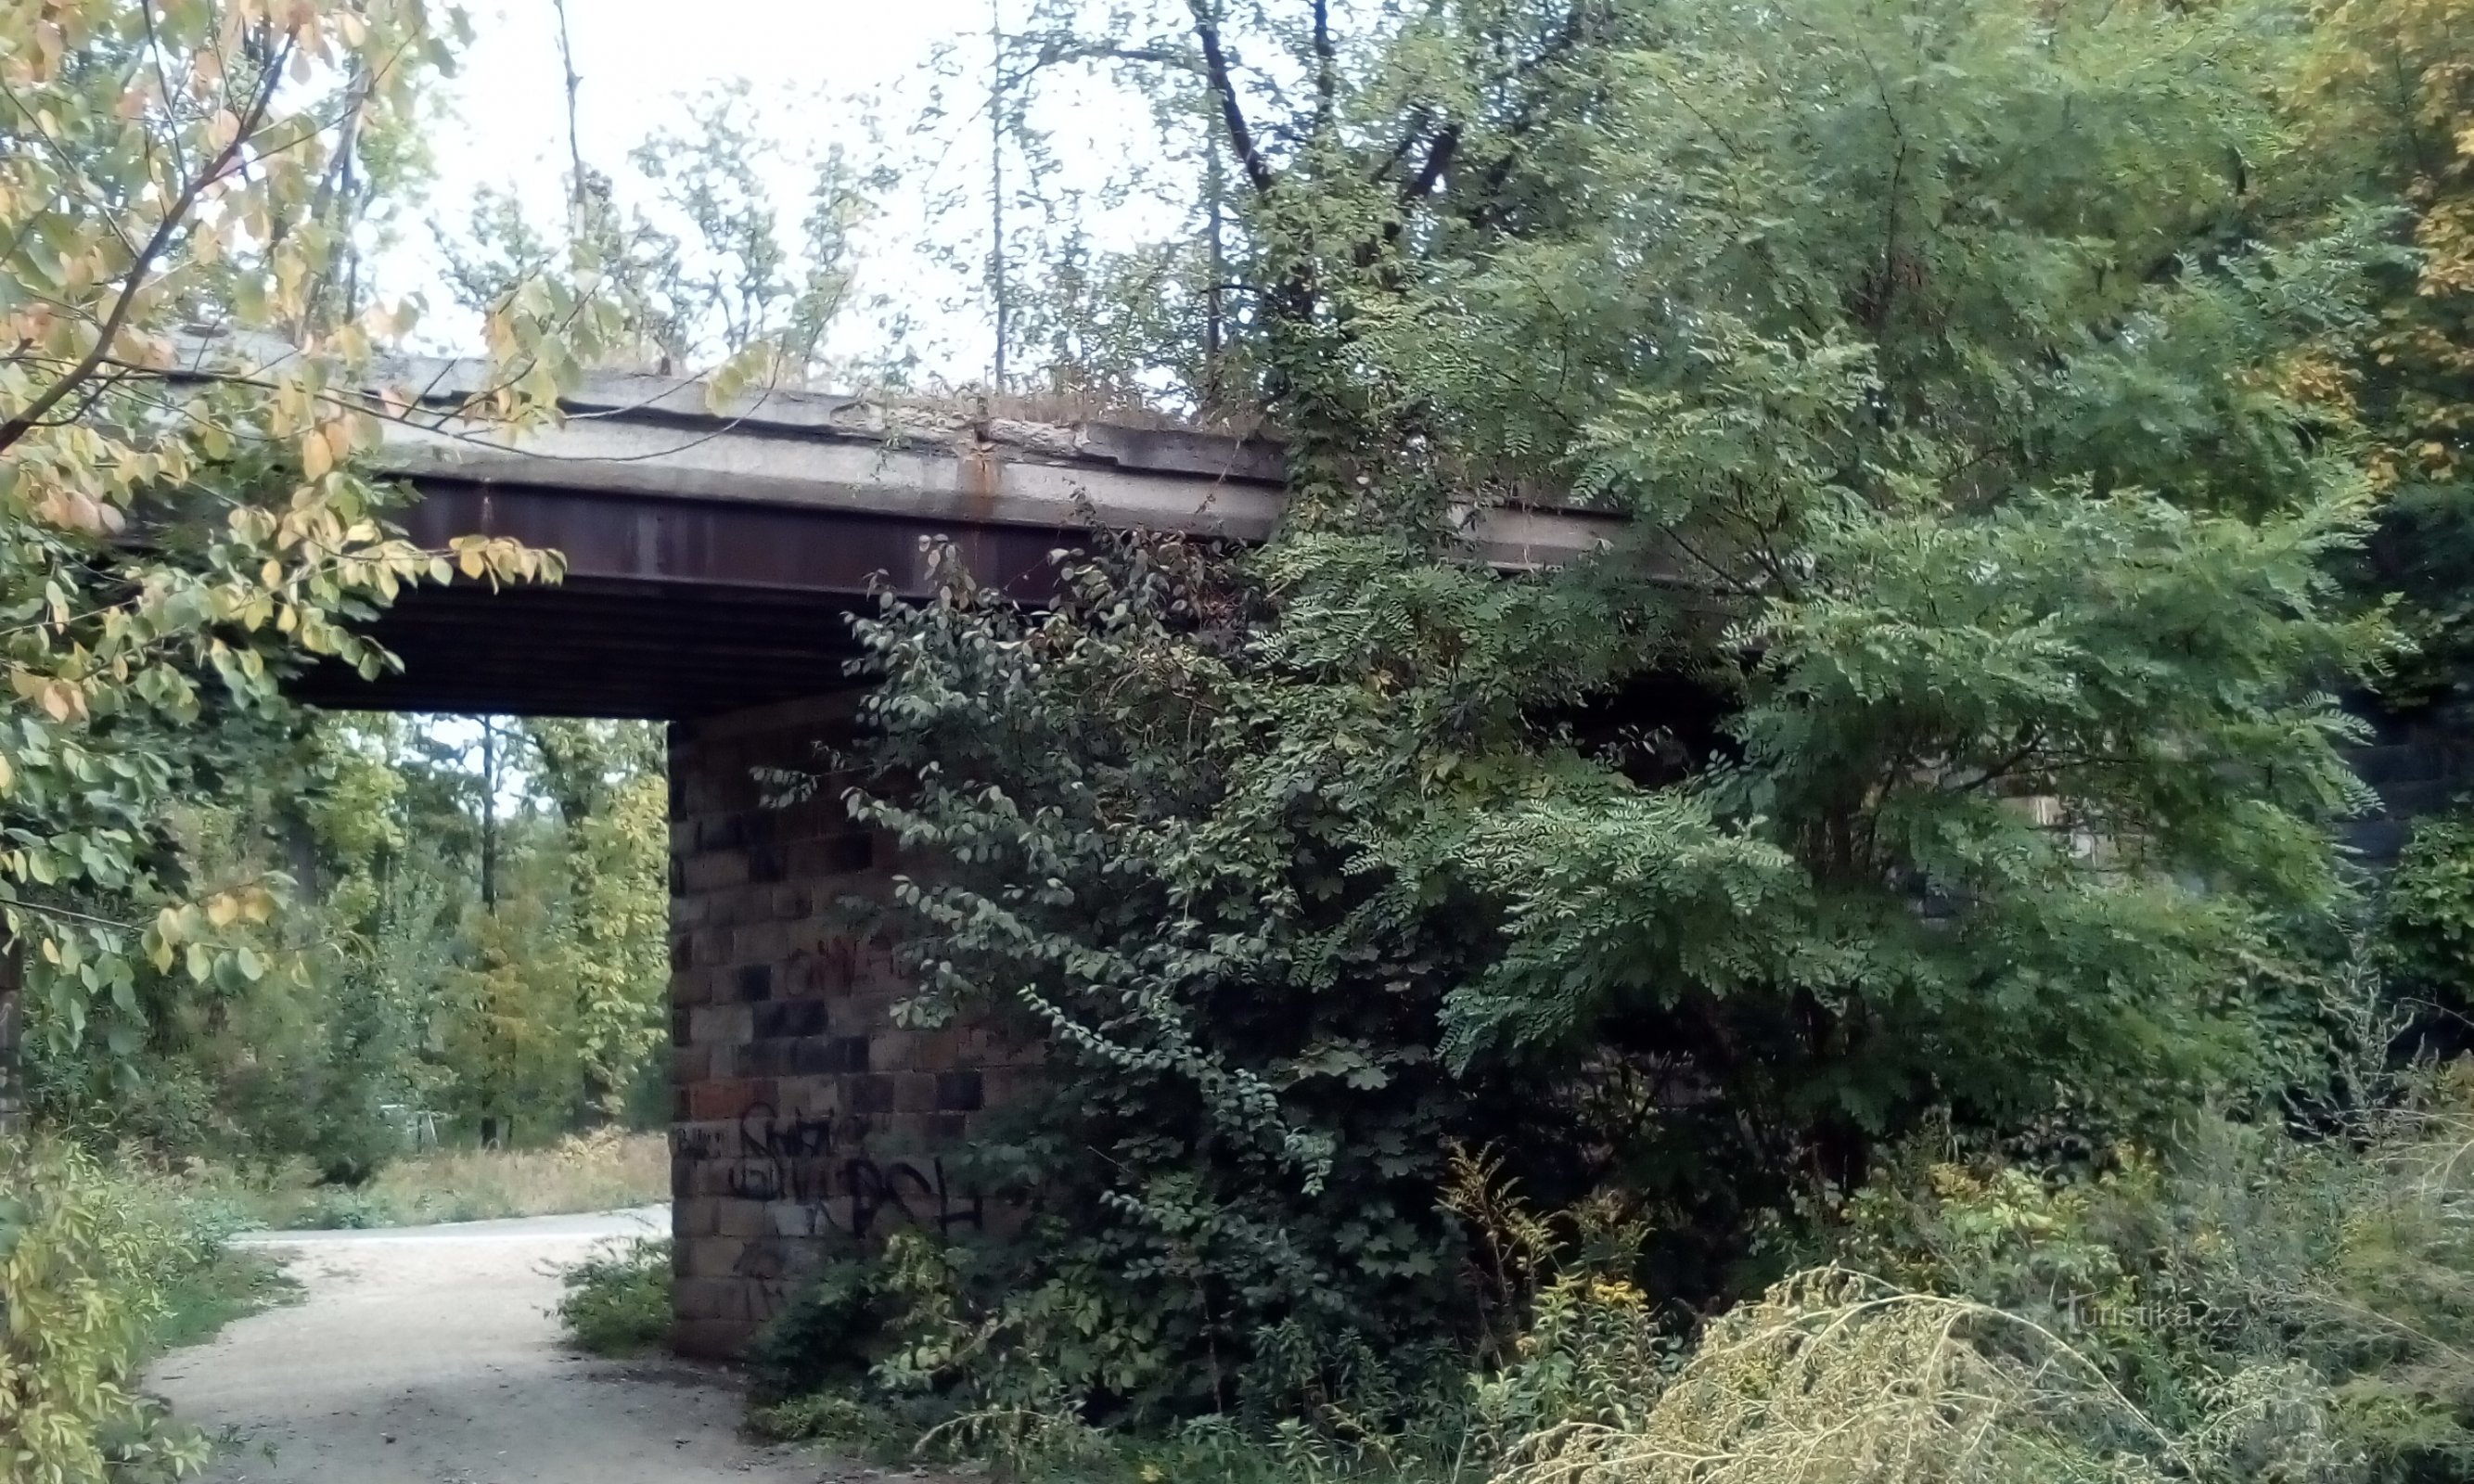 Torzo mosta tehničkog poligona željezničke pukovnije